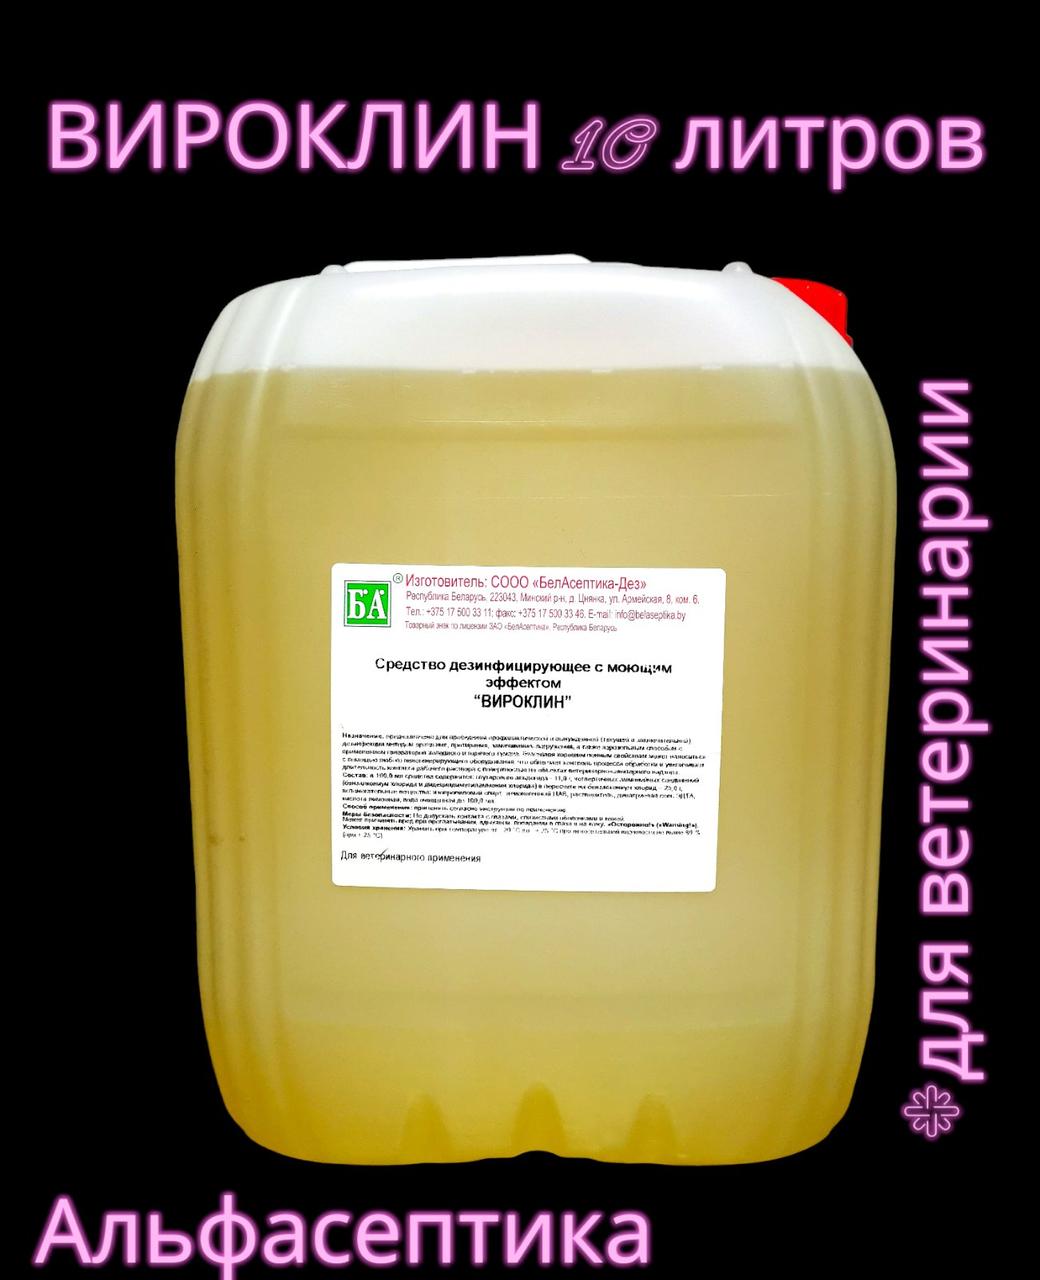 ВИРОКЛИН 10 литров дезинфицирующее средство для ВЕТЕРИНАРИИ (внесено в реестр ветпрепаратов)